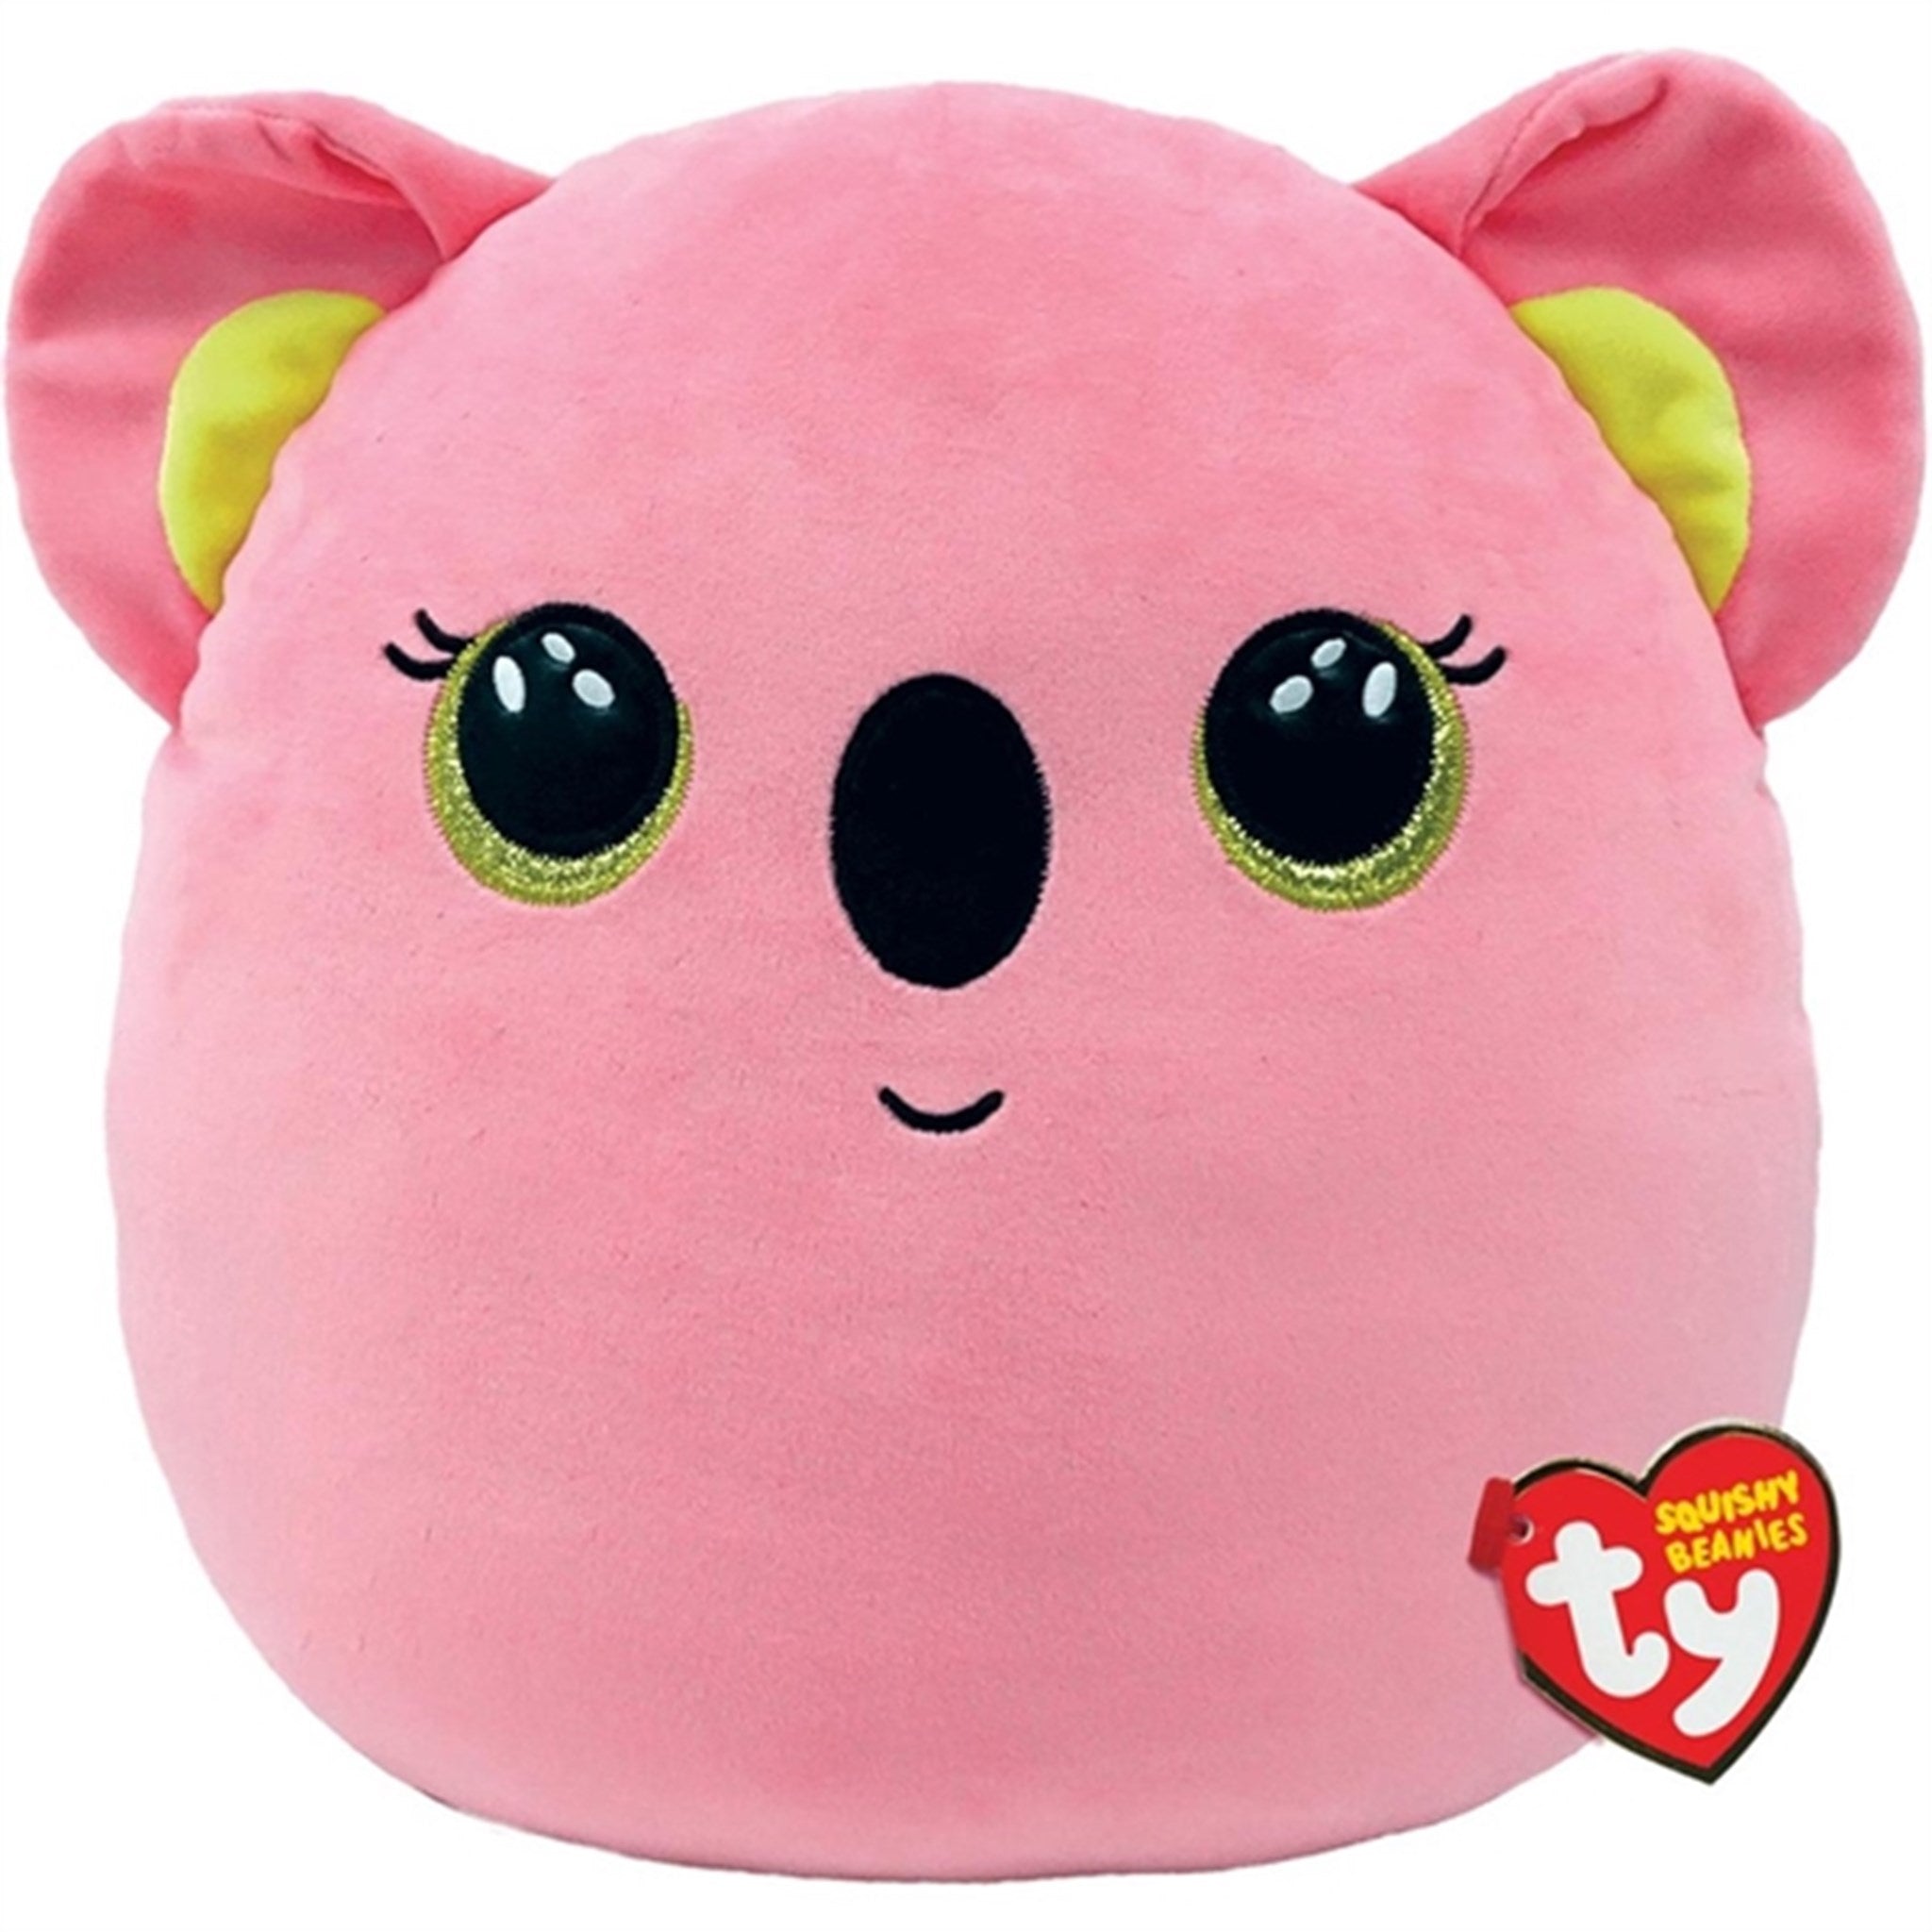 TY Squishy Beanies Poppy - Pink Koala Squish 25cm